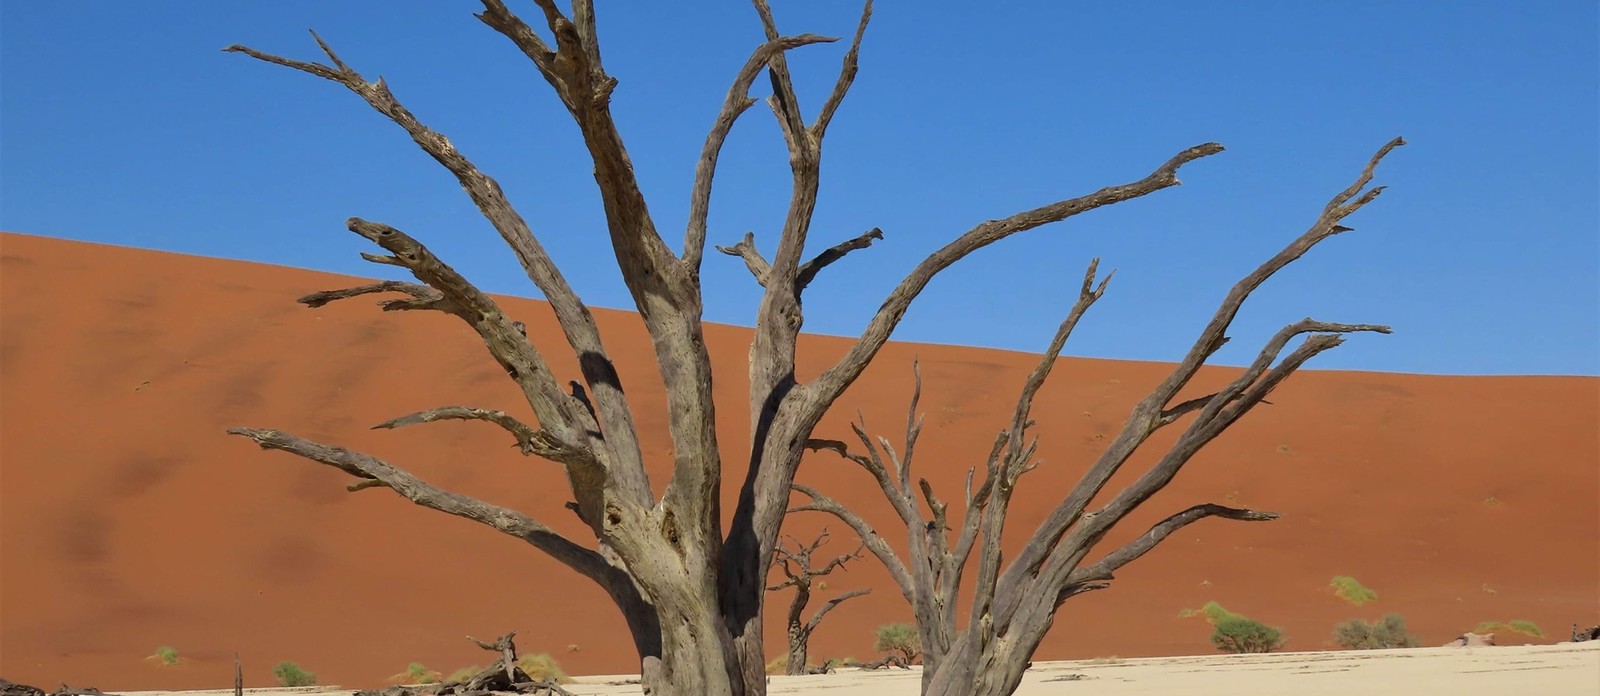 Namibija – dežela navdušujočih nasprotij, duša sveta v praznini